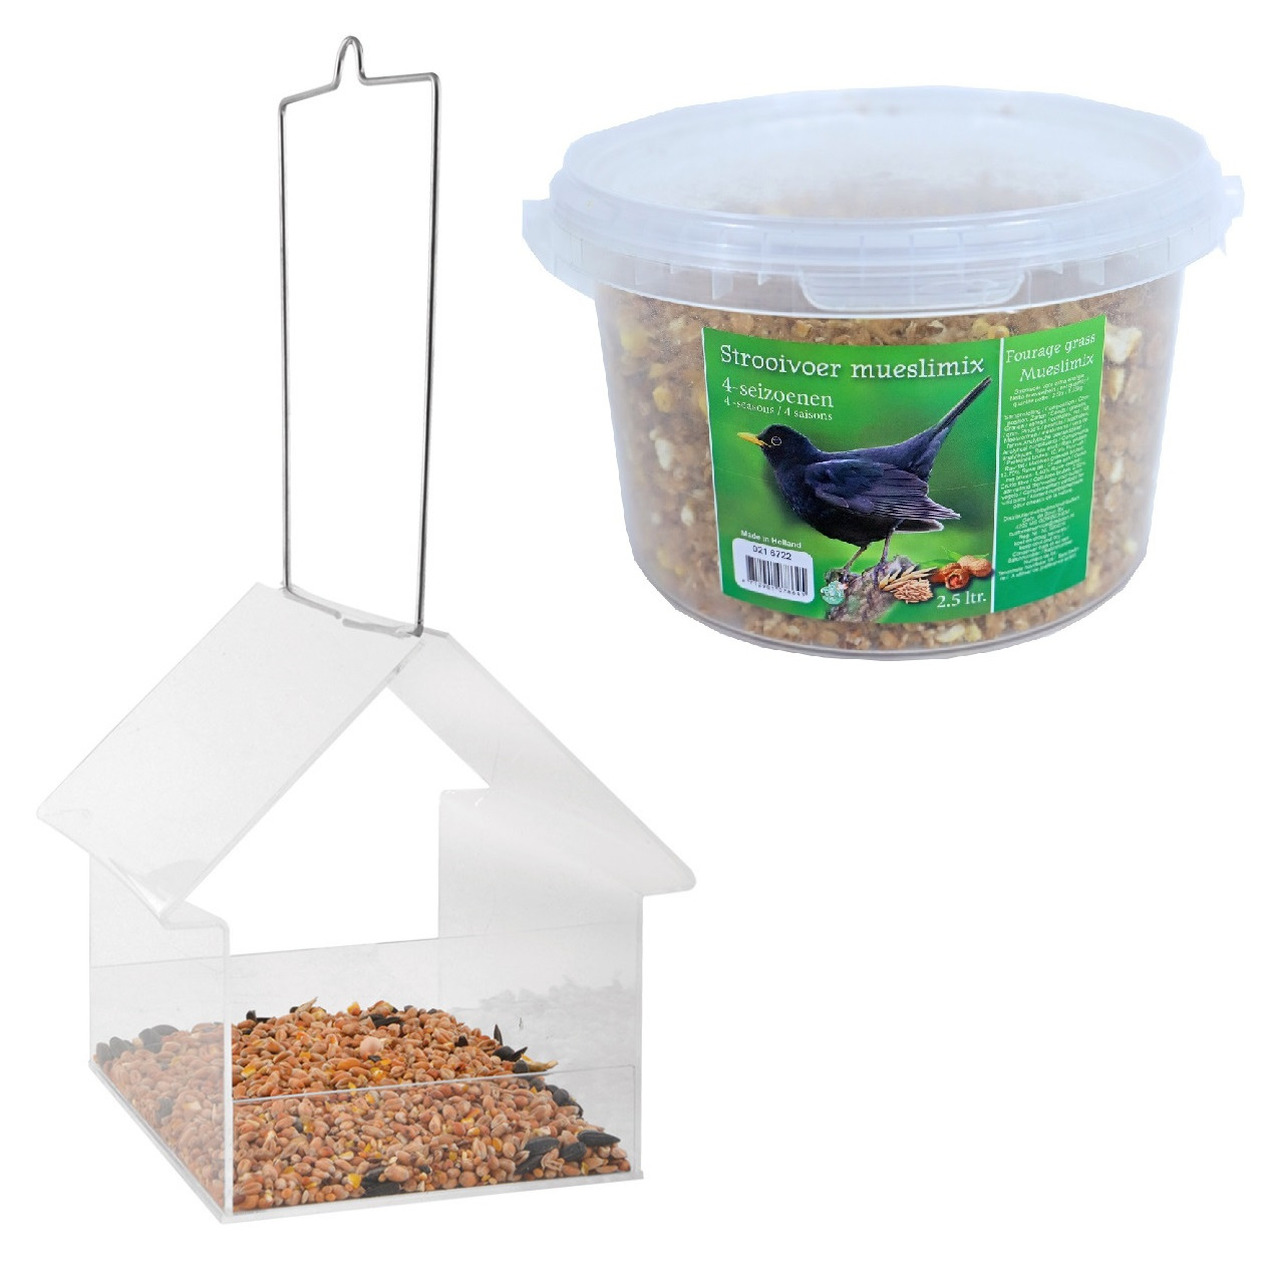 Vogelhuisje-voedertafel transparant kunststof 15 cm inclusief 4-seizoenen mueslimix vogelvoer